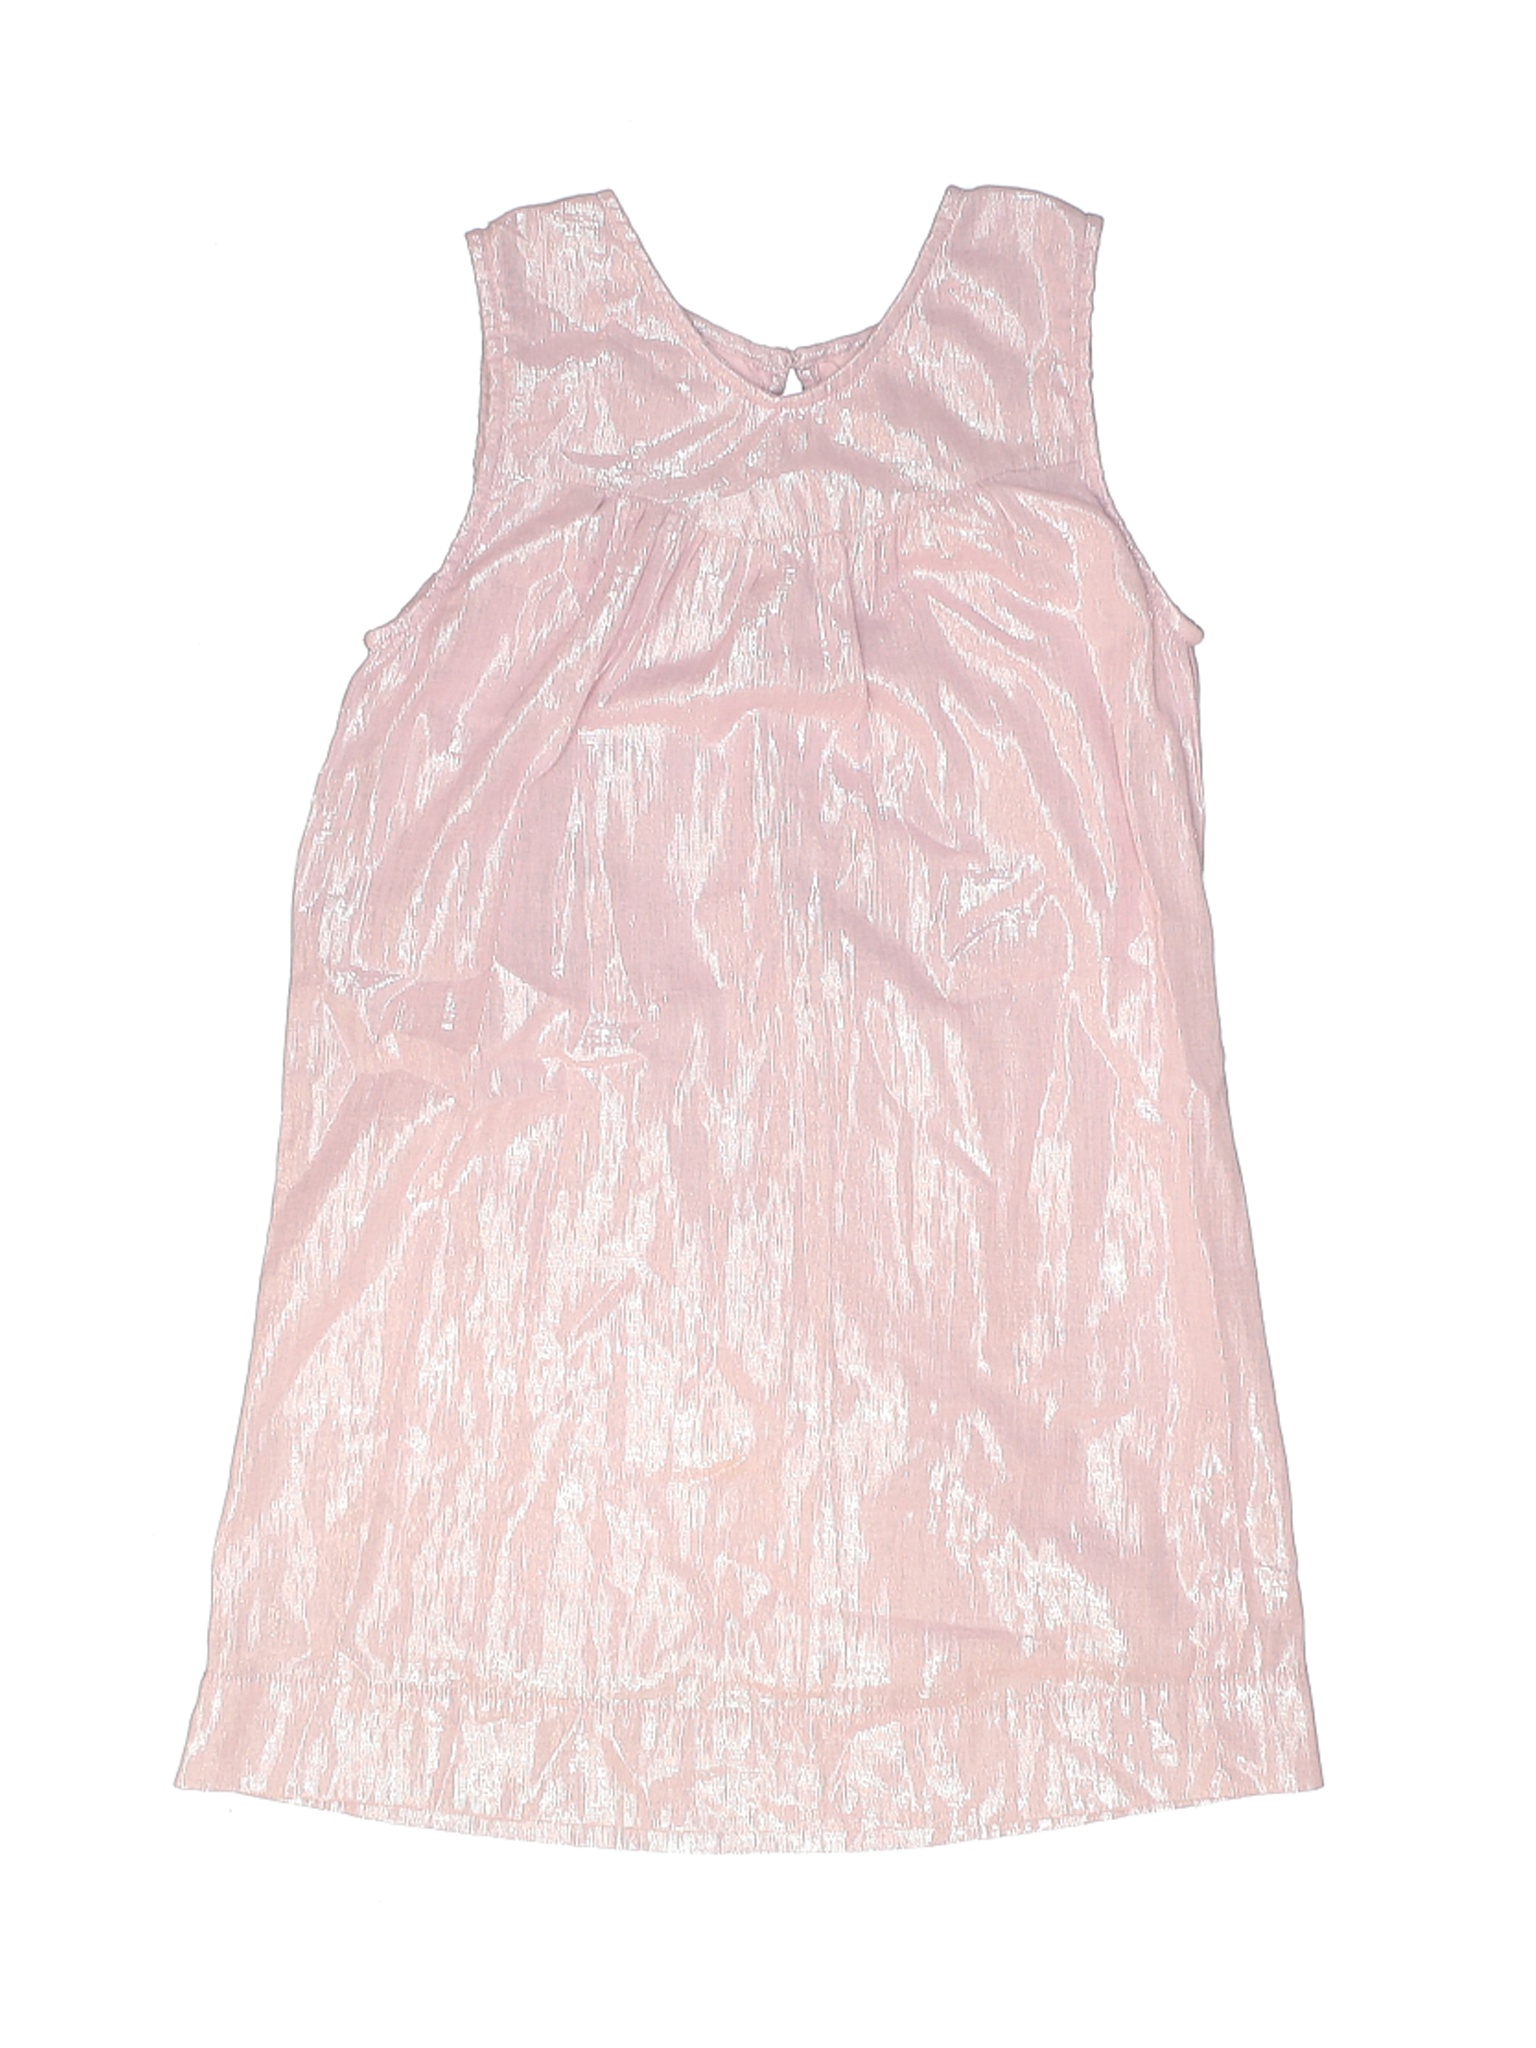 Peek... Girls Pink Dress 8 | eBay